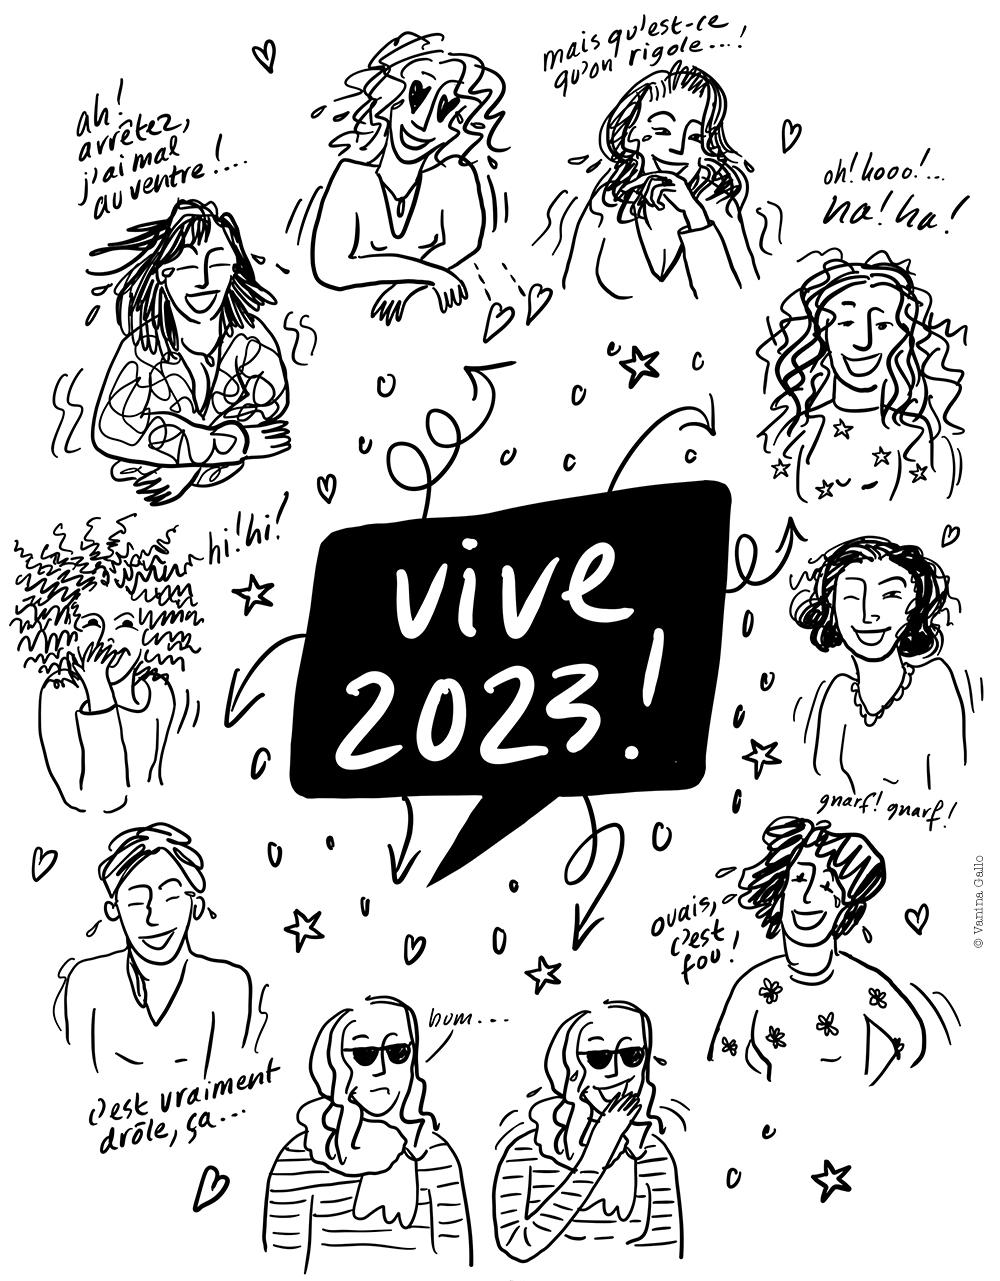 Vive 2023